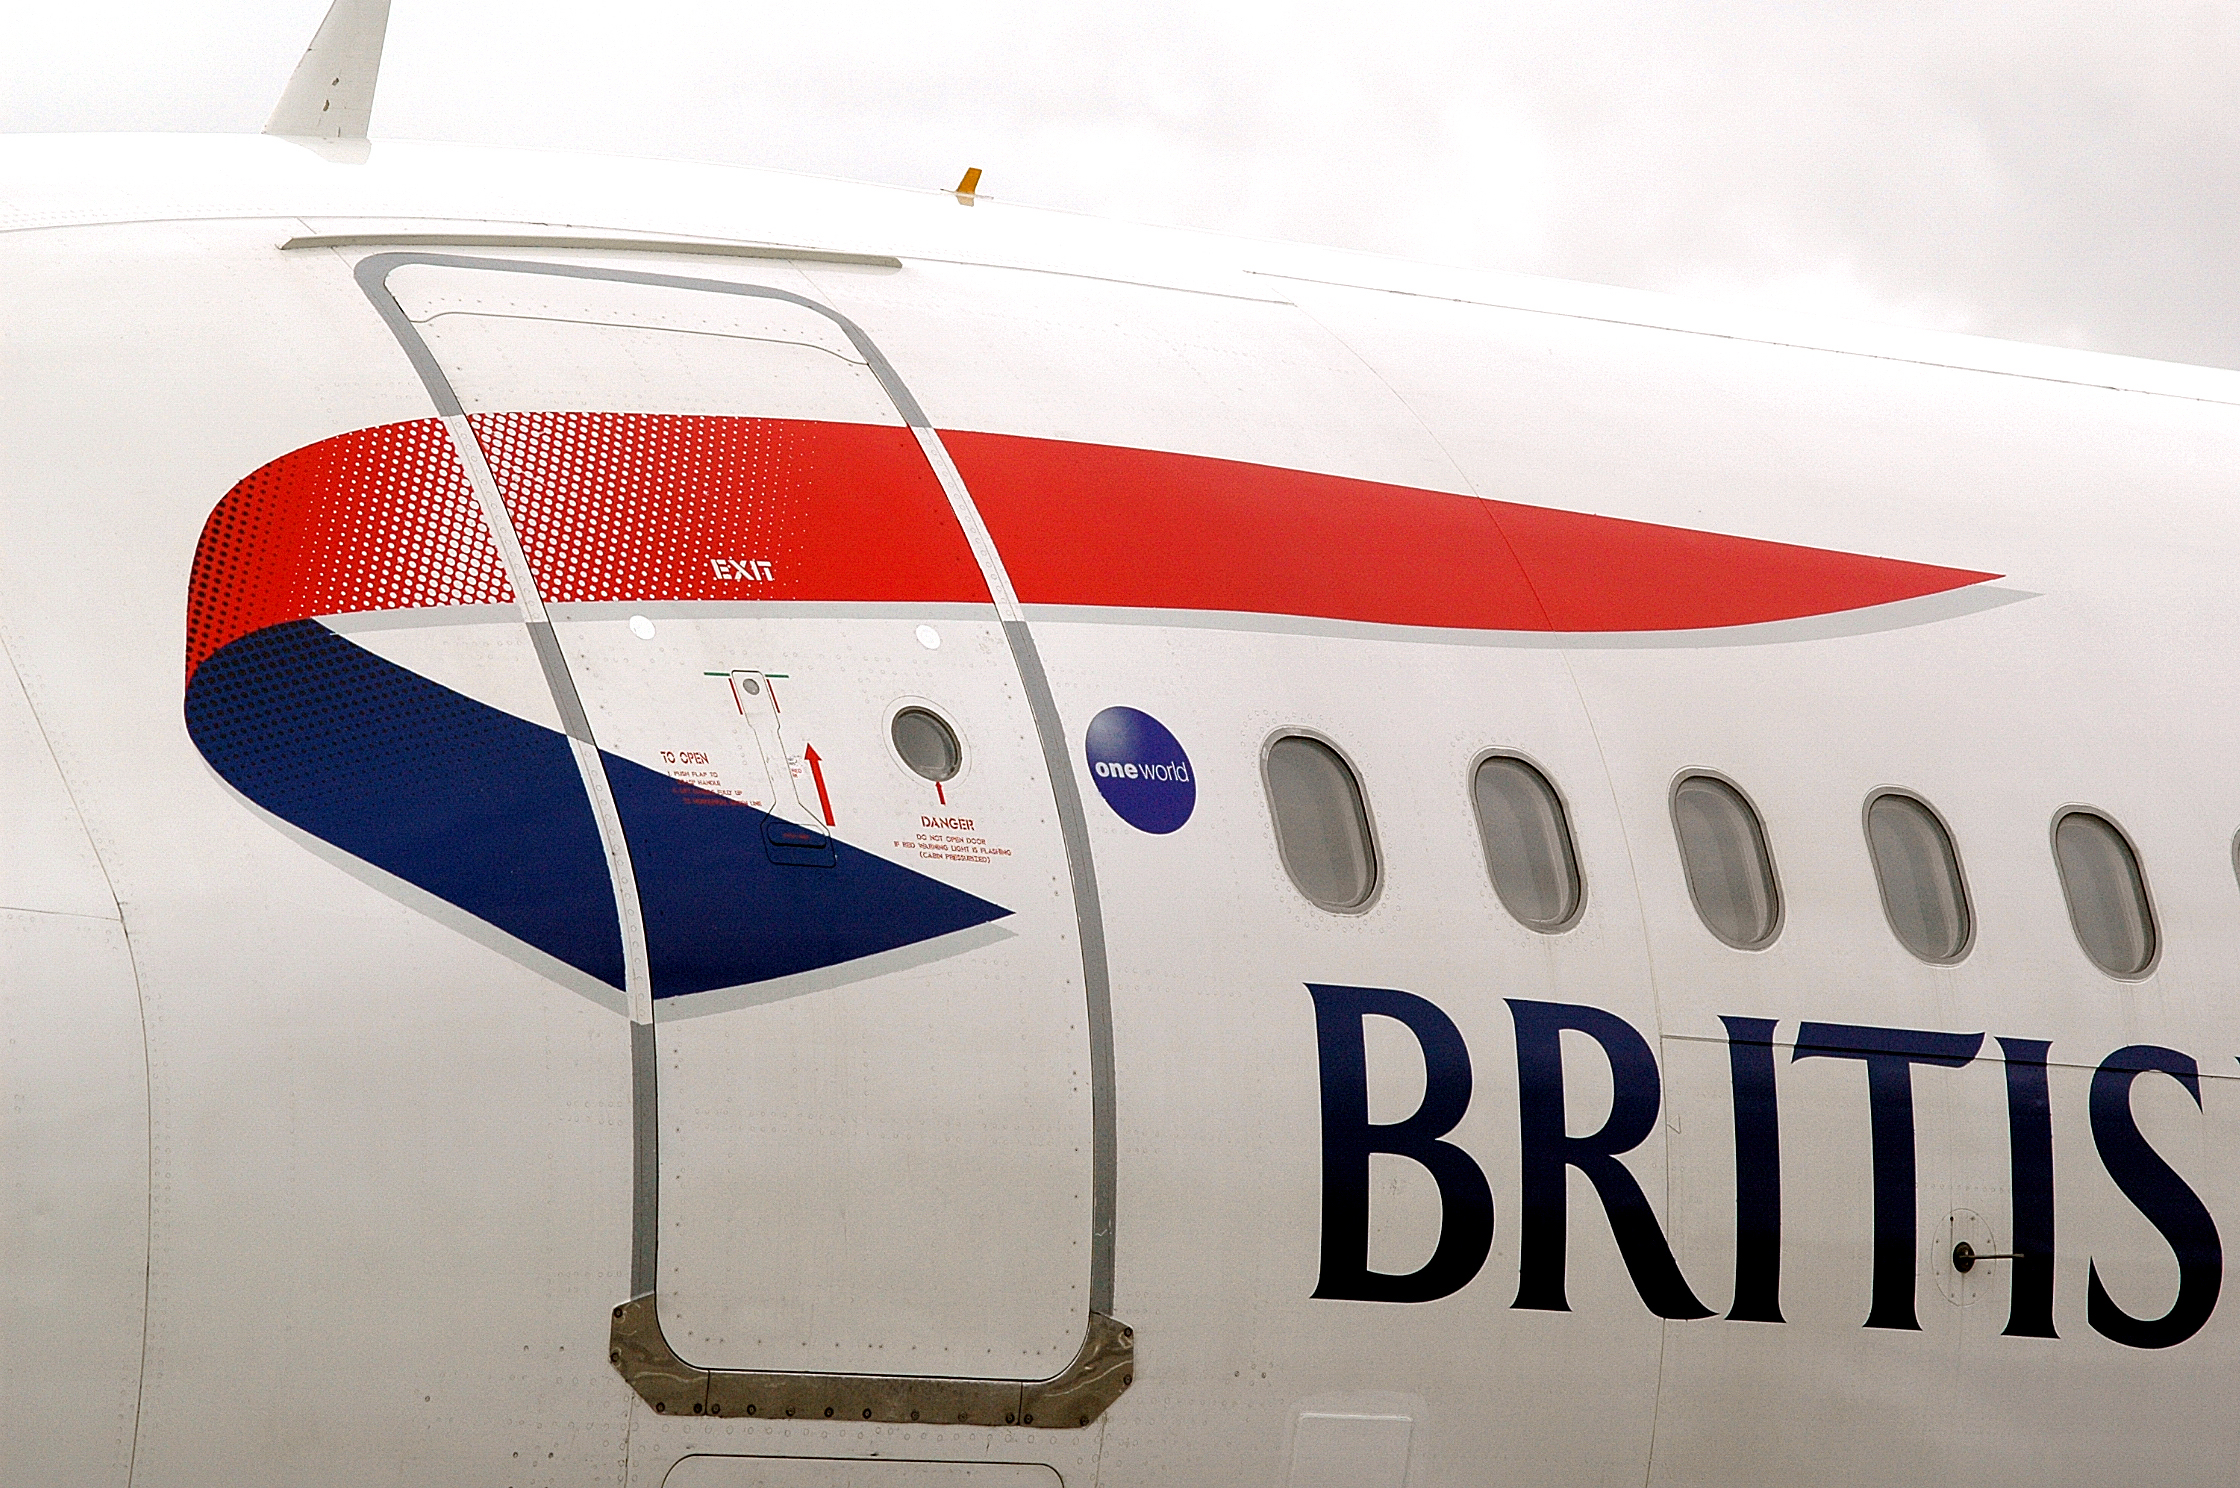 British Airways va relier à nouveau Heathrow à Inverness